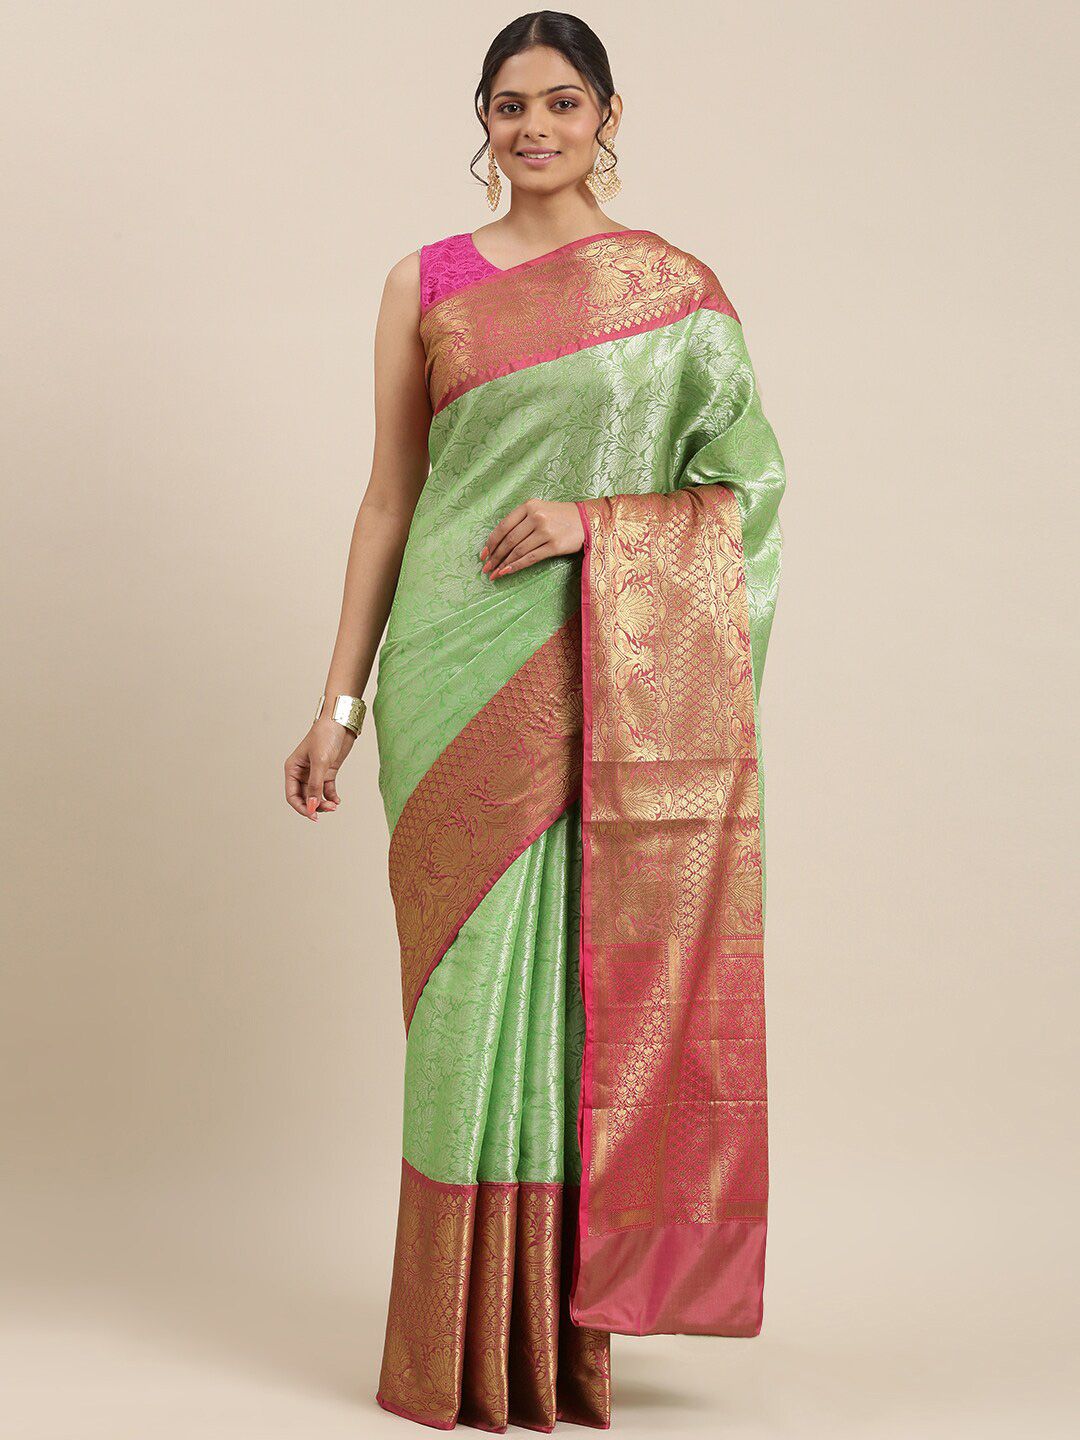 PTIEPL Banarasi Silk Works Floral Woven Design Zari Brocade Banarasi Saree Price in India